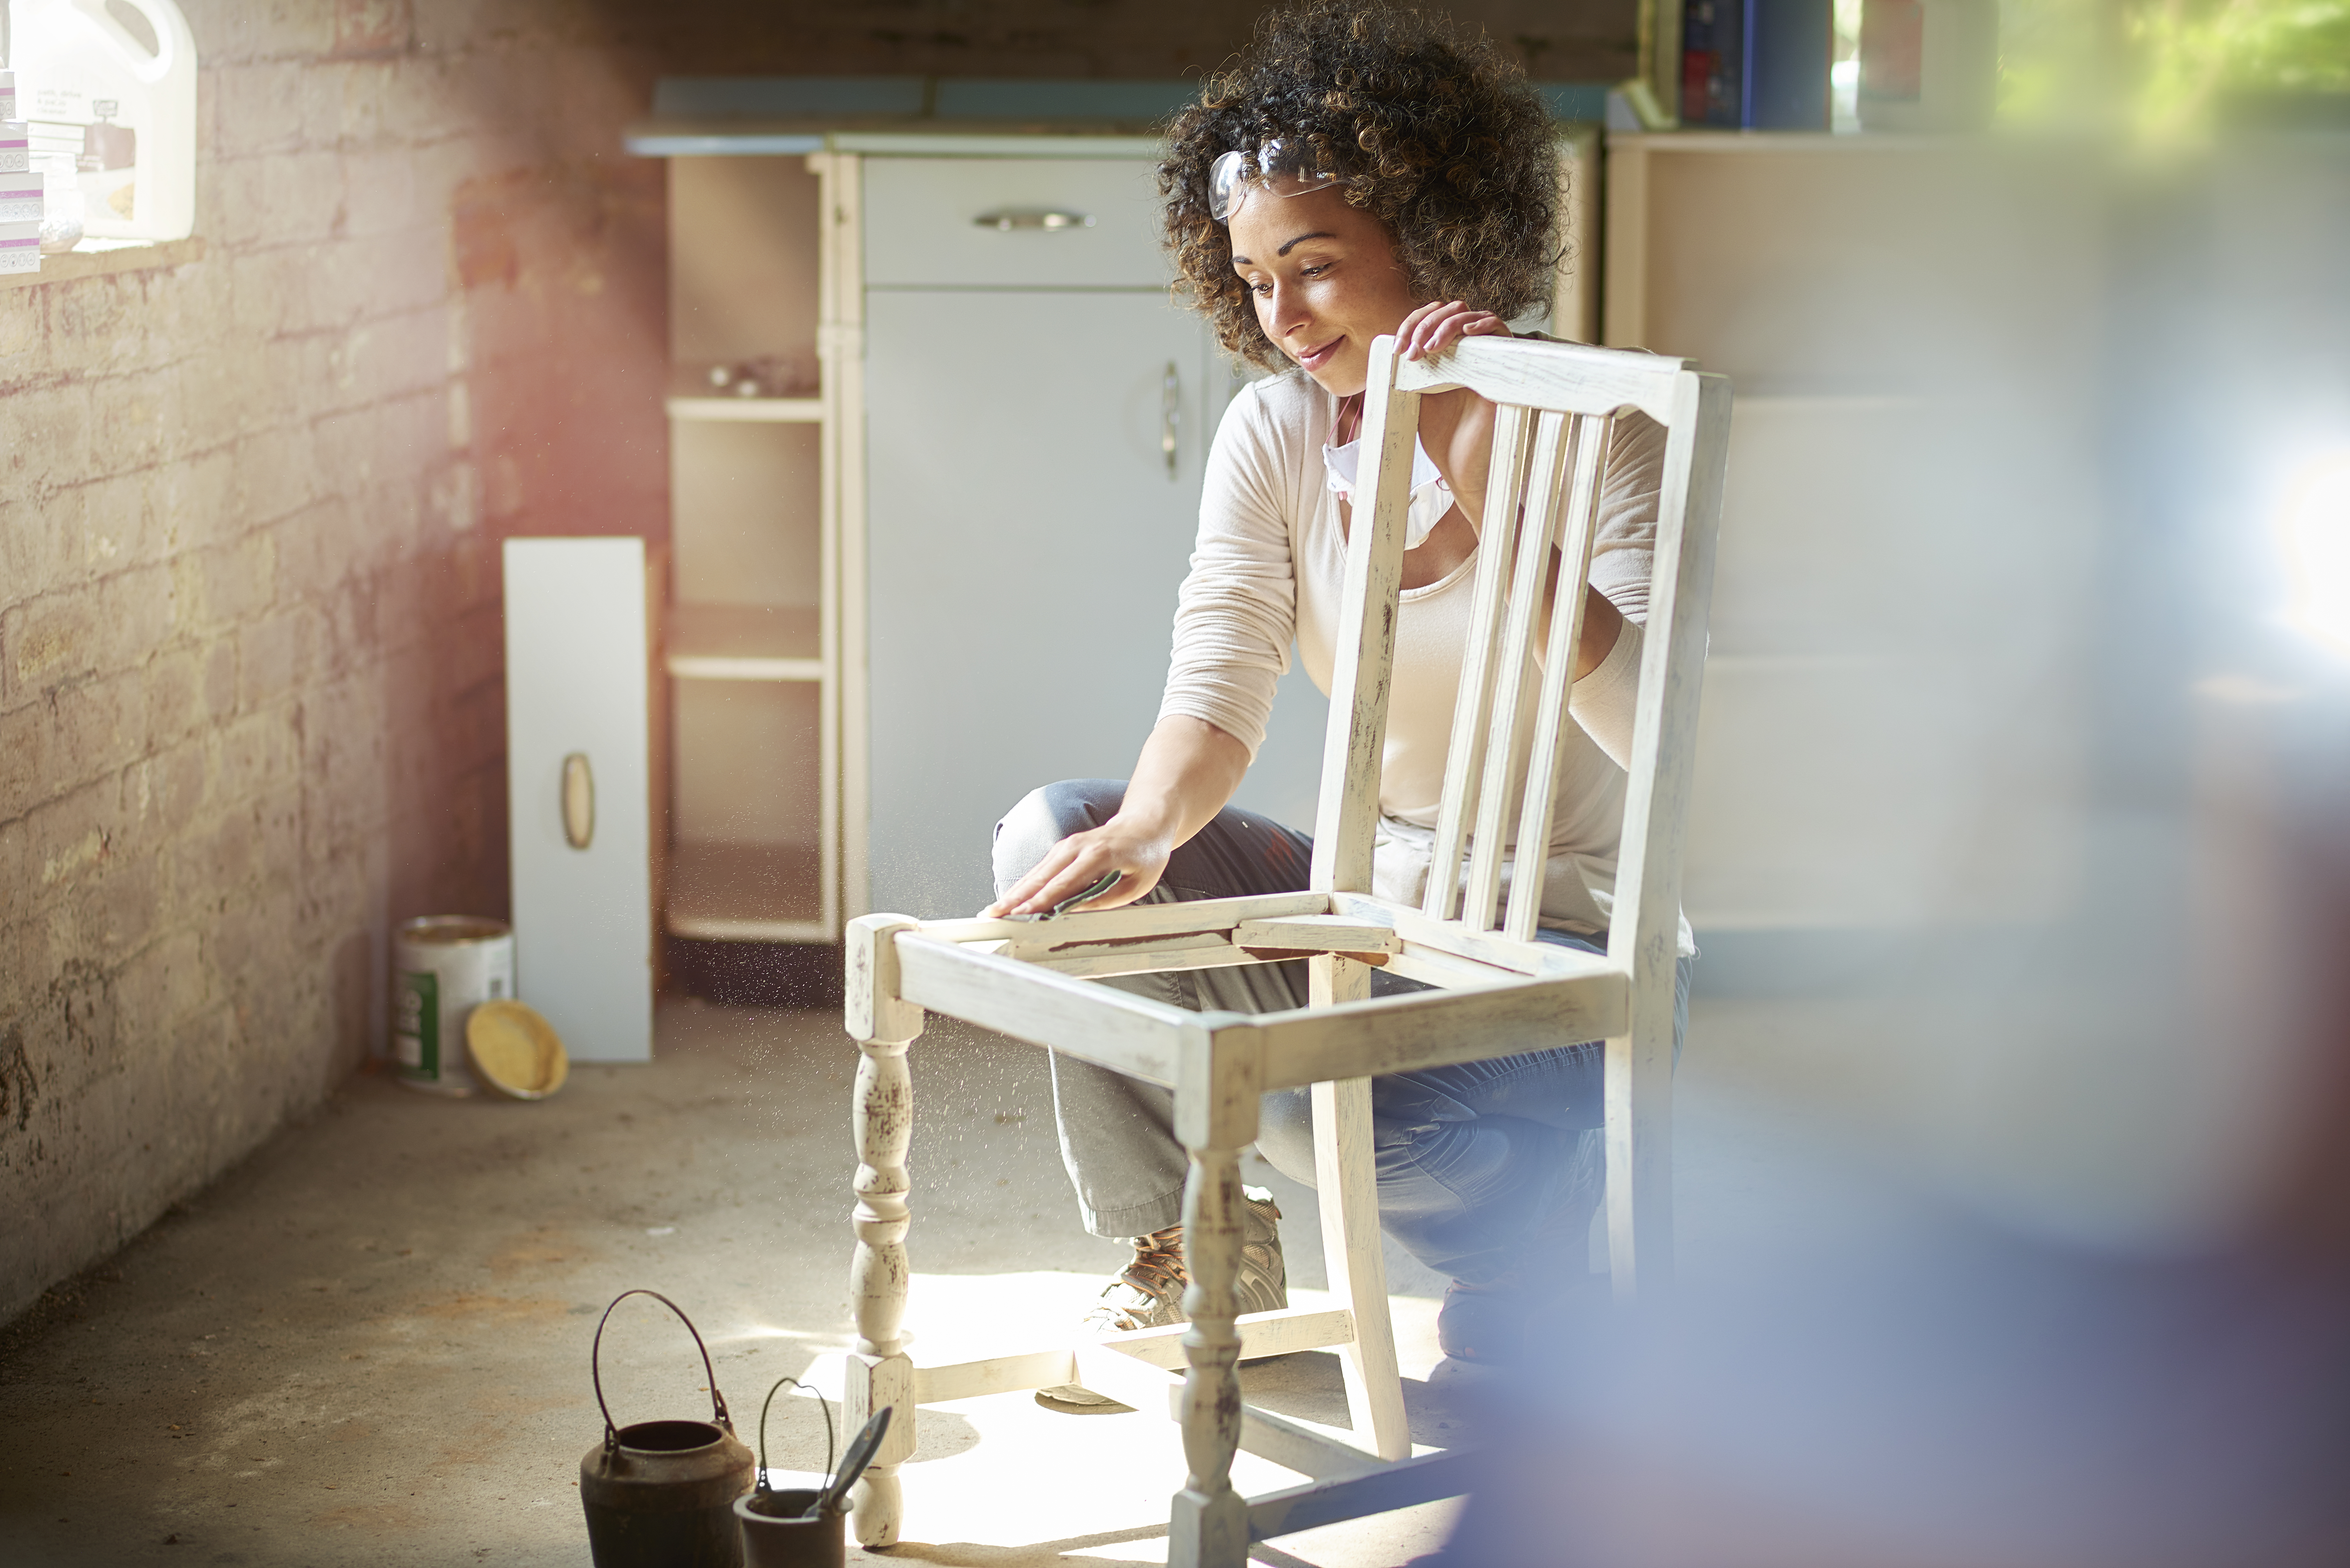 Mulher lixando cadeira de madeira, preparando-a para a aplicação do esmalte.